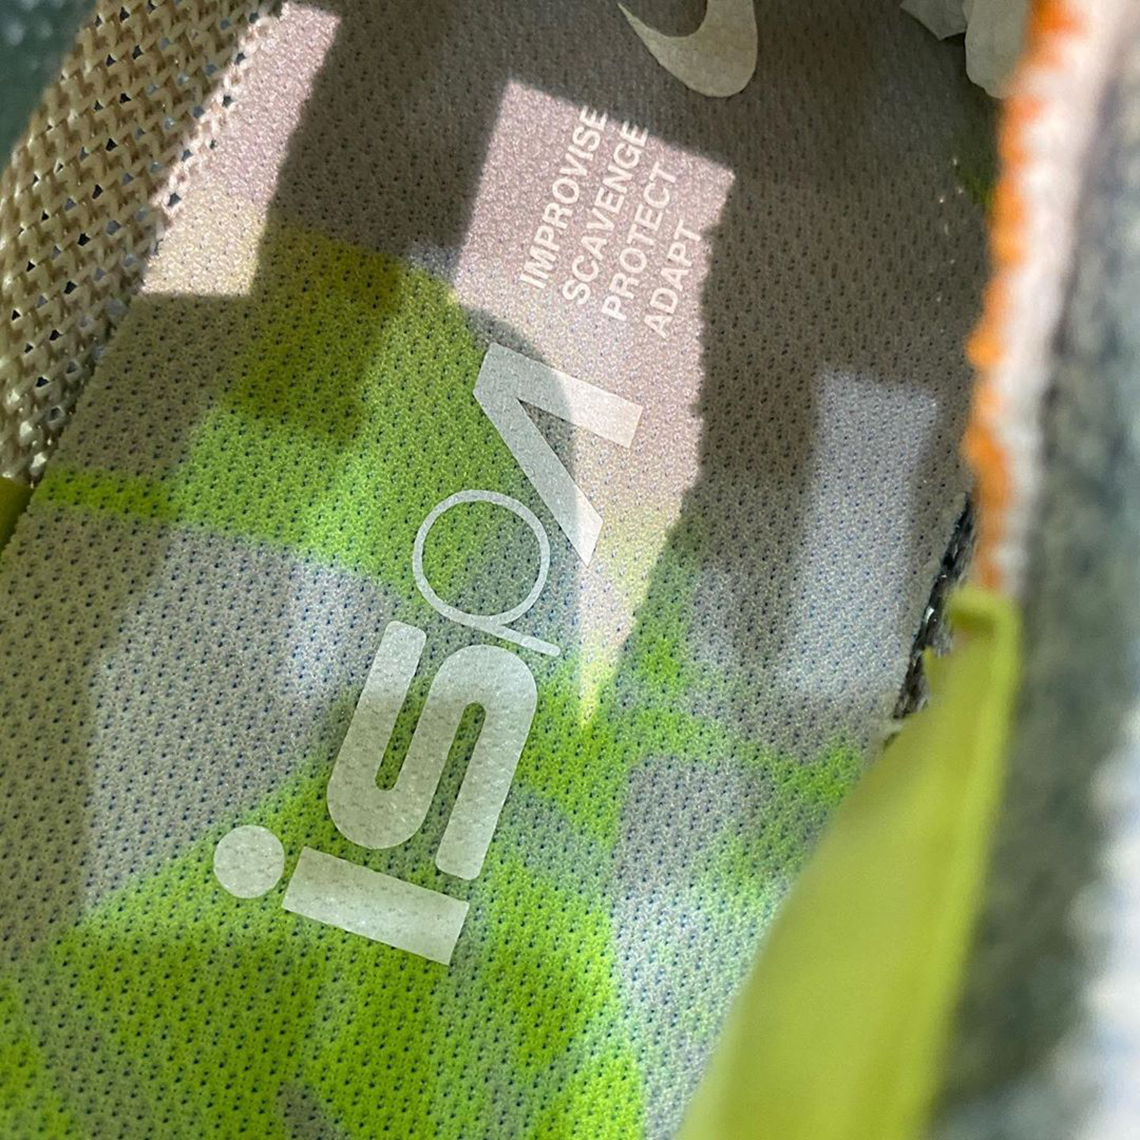 New Nike ISPA release